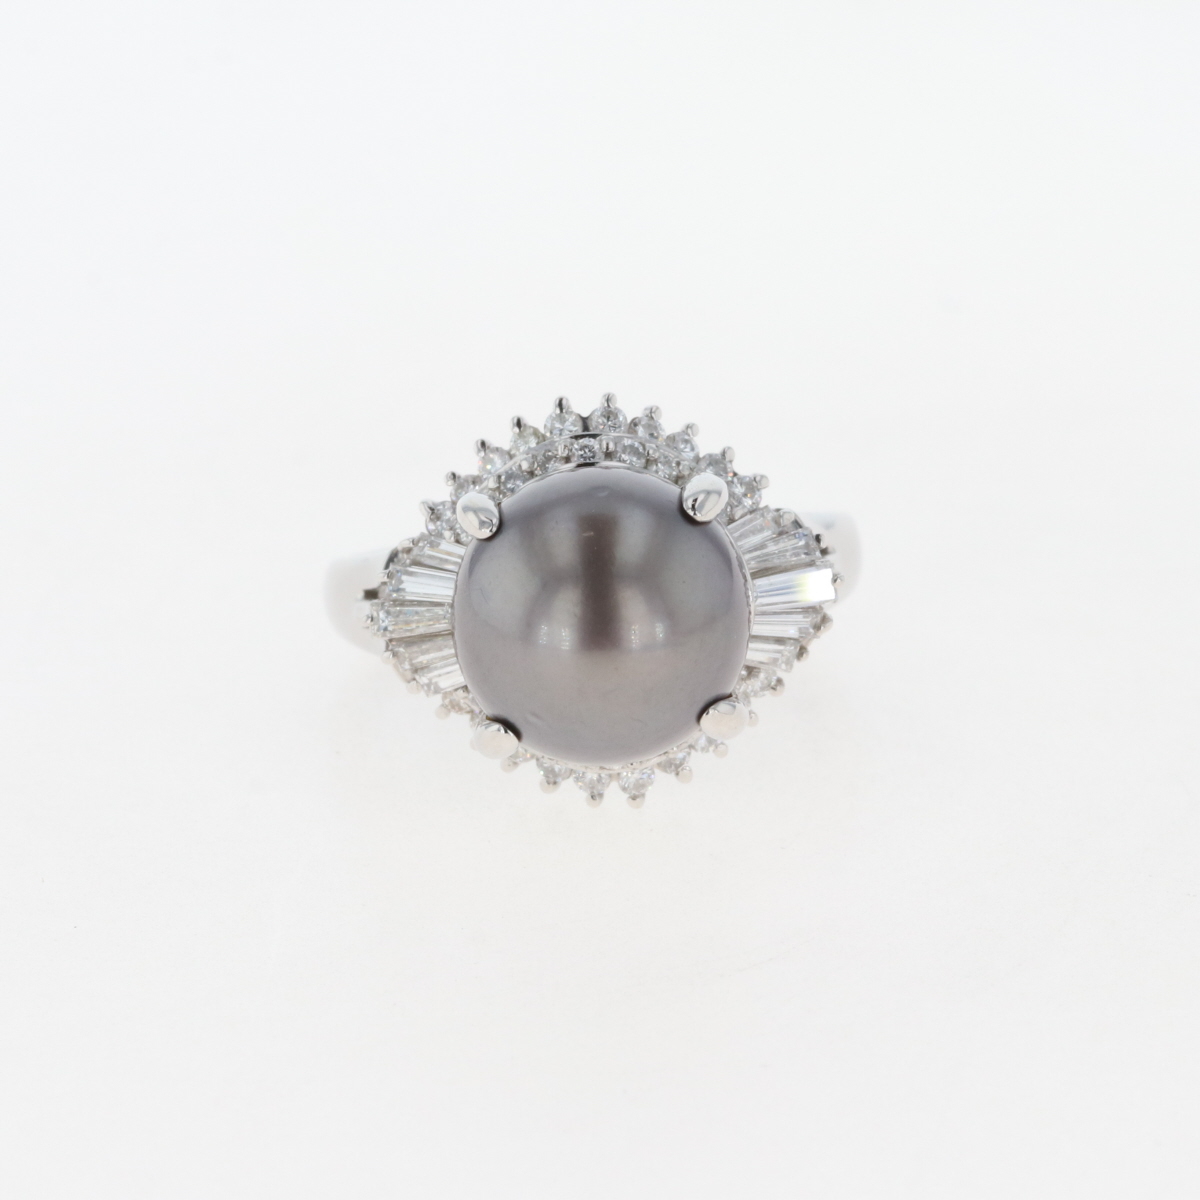  パール デザインリング プラチナ メレダイヤ 指輪 真珠 リング 16号 Pt850 パール ダイヤモンド レディース 